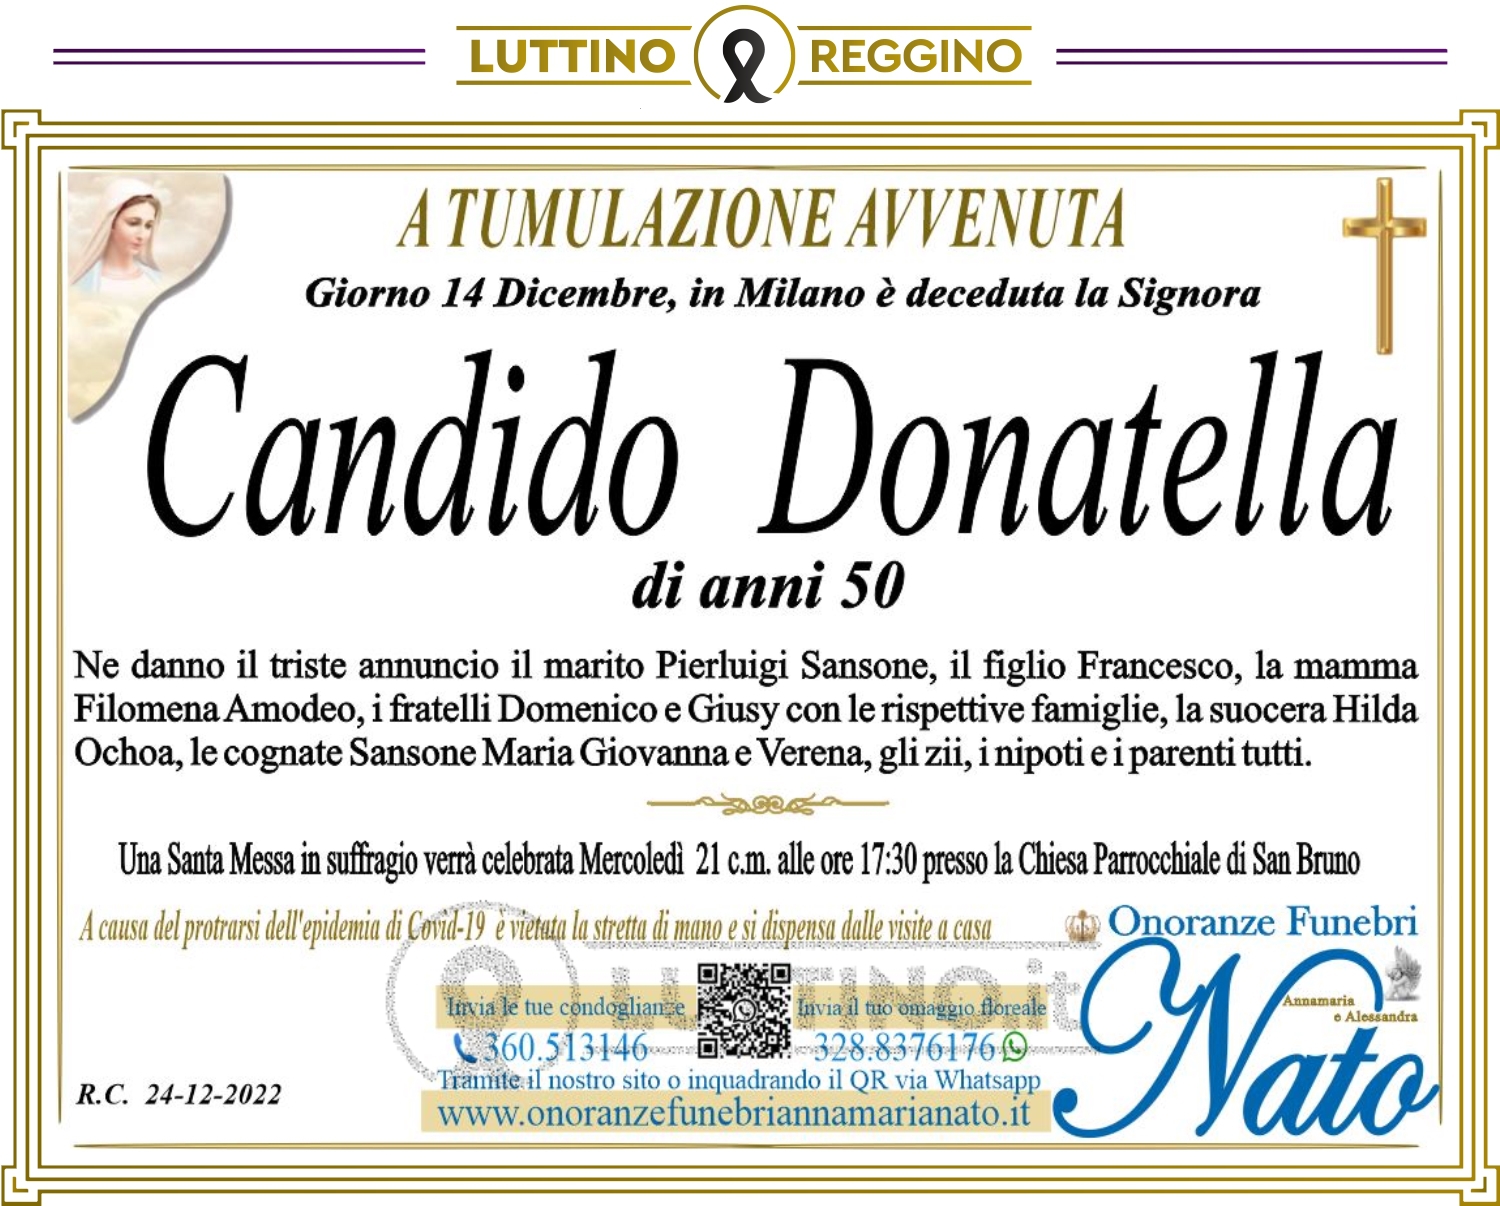 Donatella  Candido 